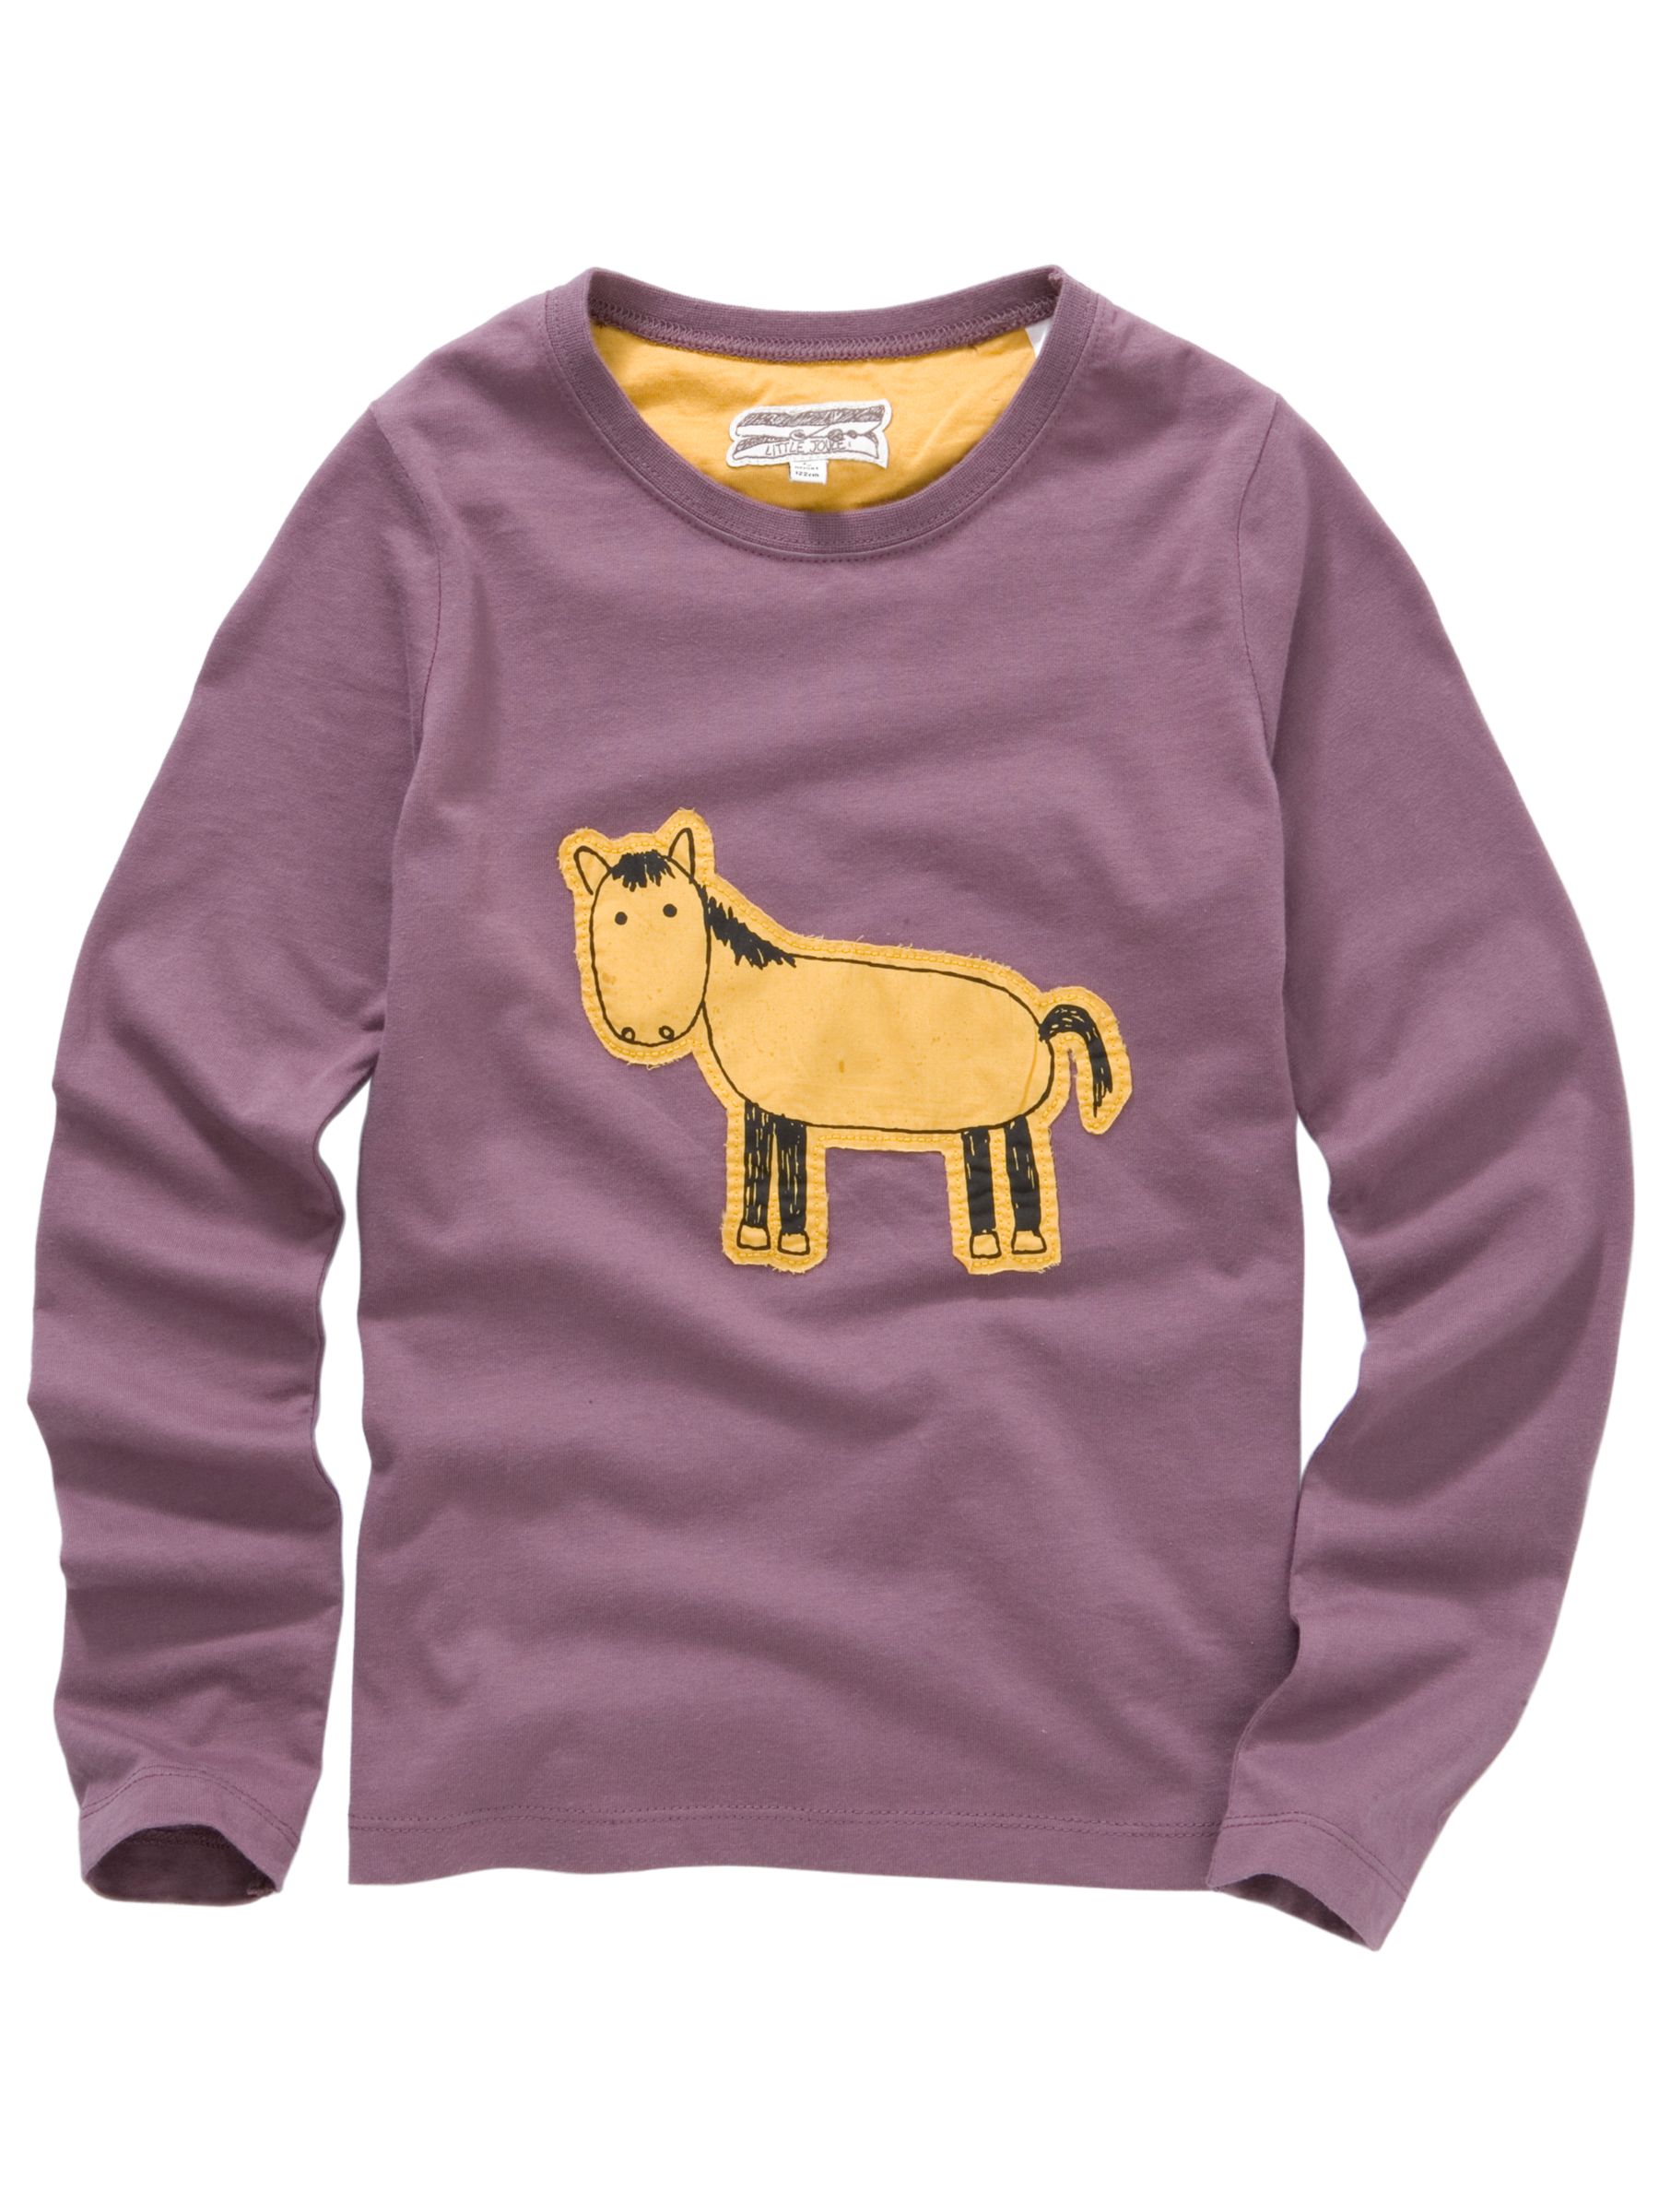 Little Joules Horse Applique T-Shirt, Brown